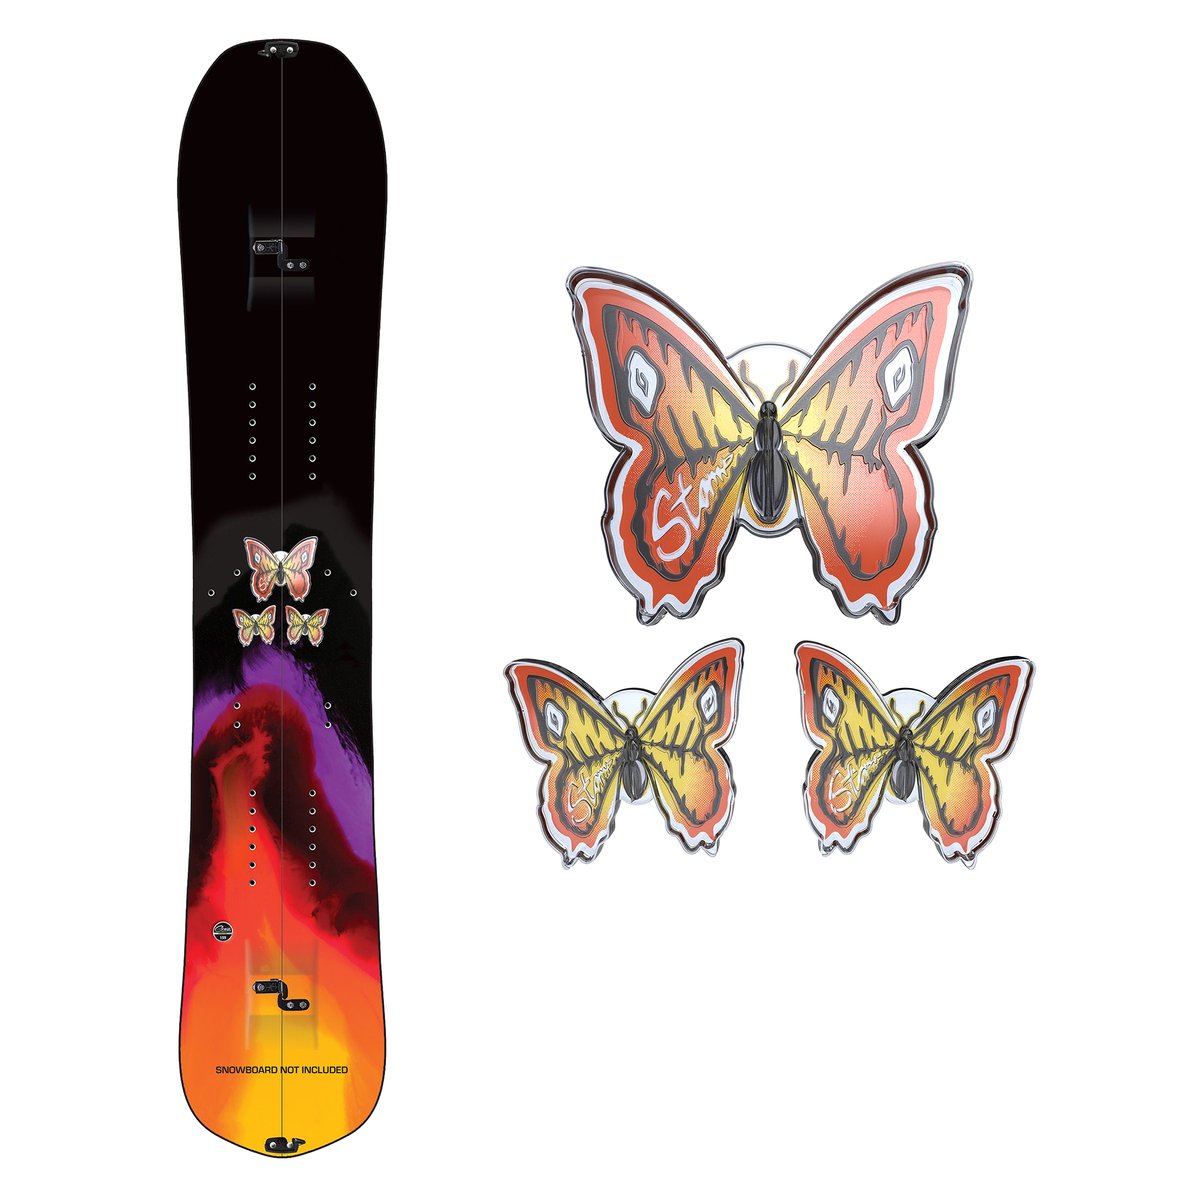 Butterflies Stomp Pads : 3D Collection